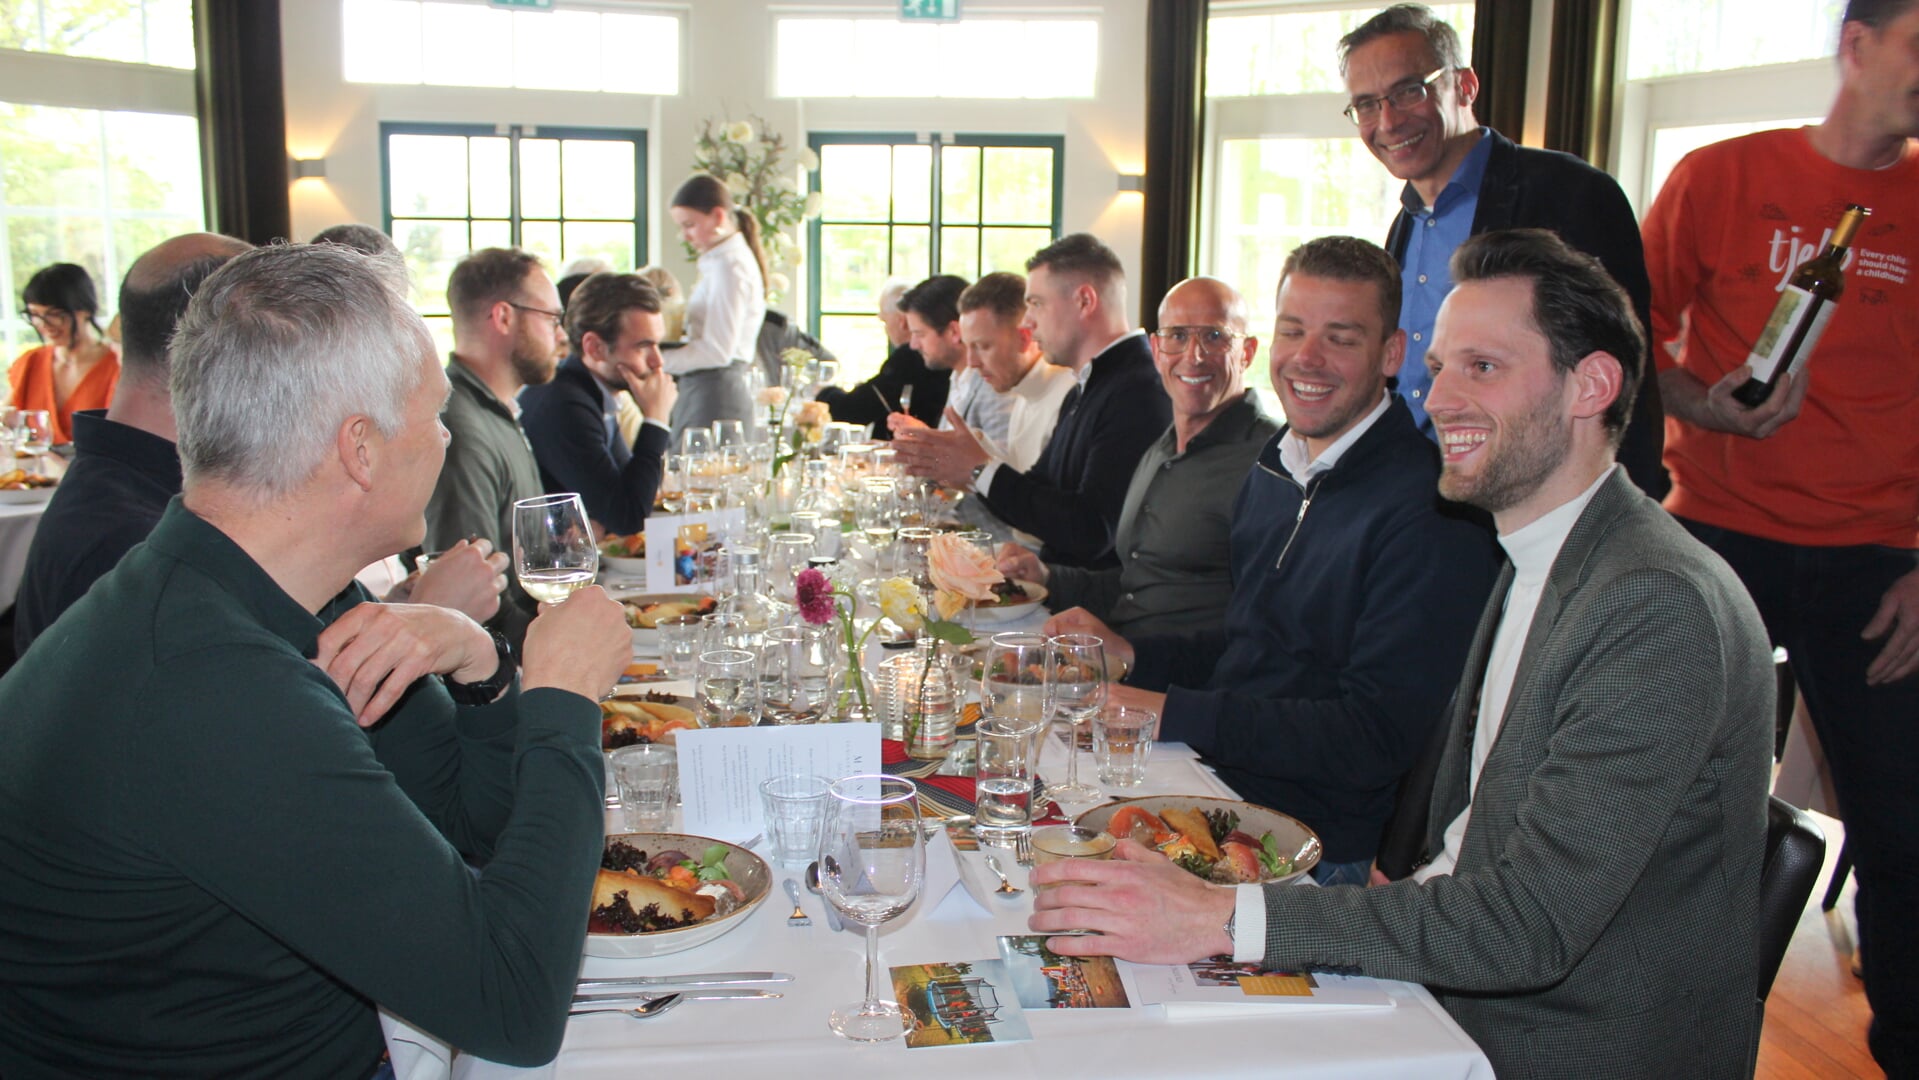 Het fundraising diner voor Stichting Tjeko in Boskoop:  Marc Nuijten (geheel rechts), Ferdi van den Bergh (staand) en René van der Zel (3e van rechts). 